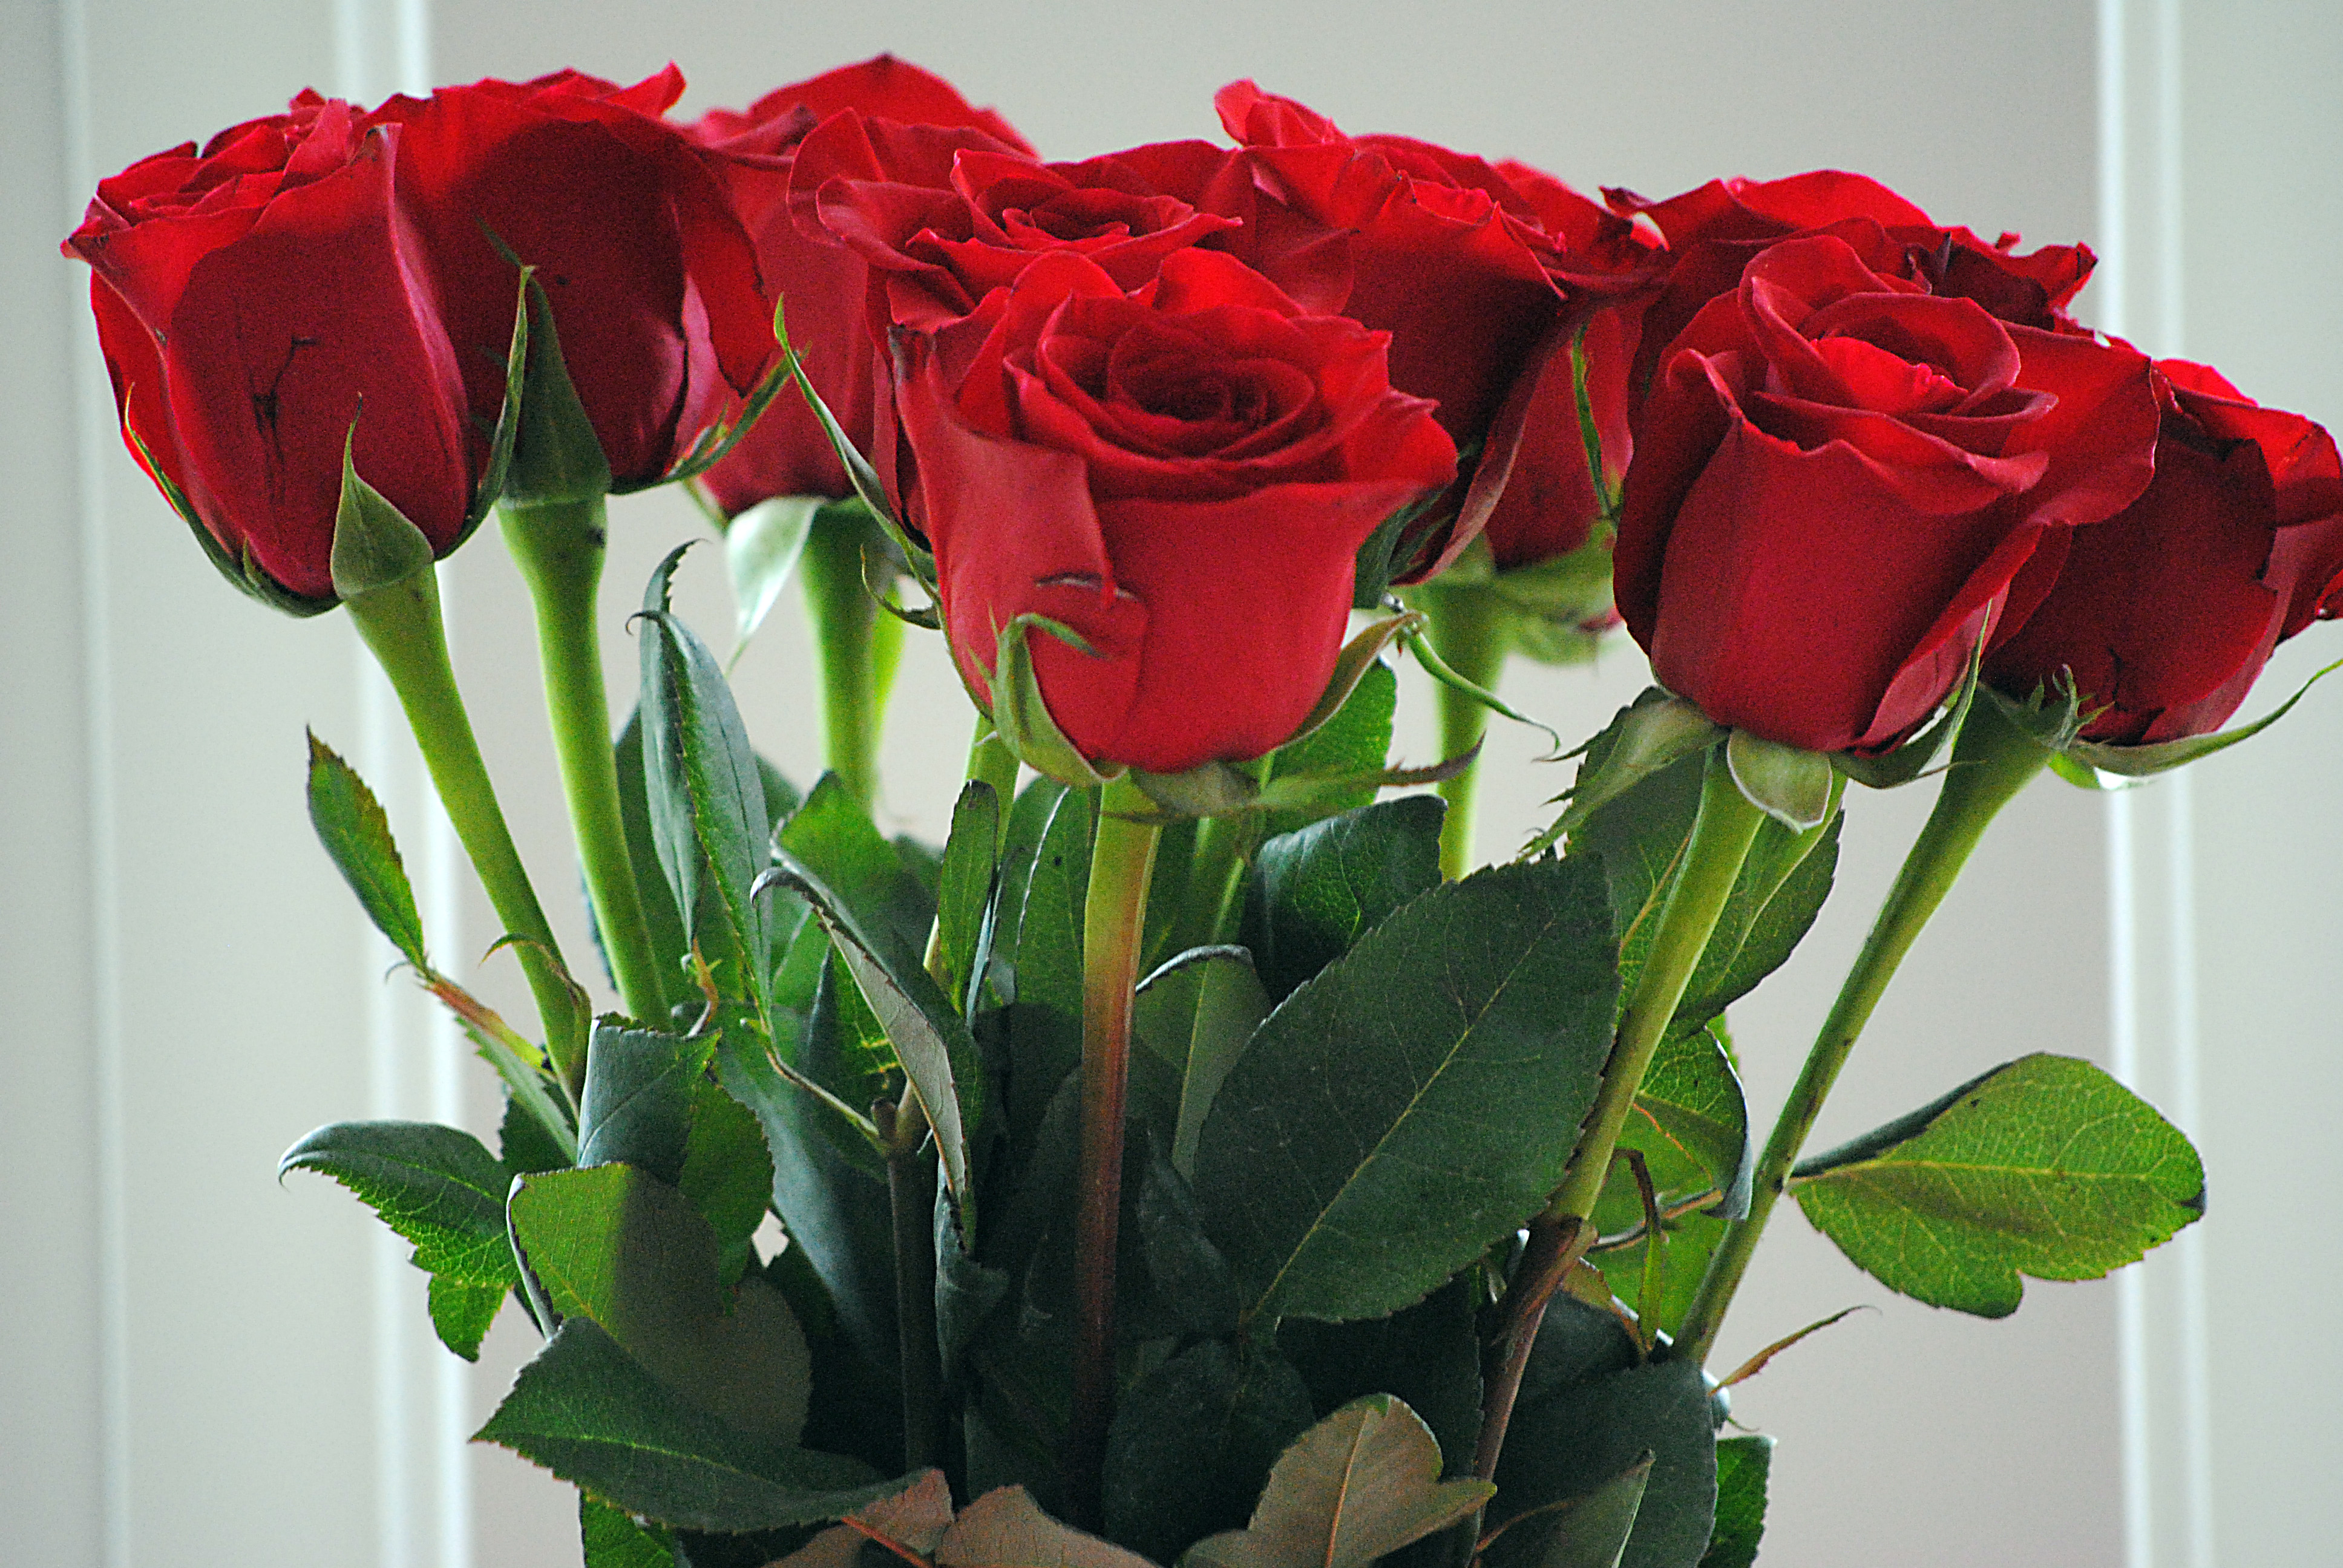 Bên cạnh bạn gái, có thể chọn một bó hoa hồng đỏ cho ngày sinh nhật của mẹ